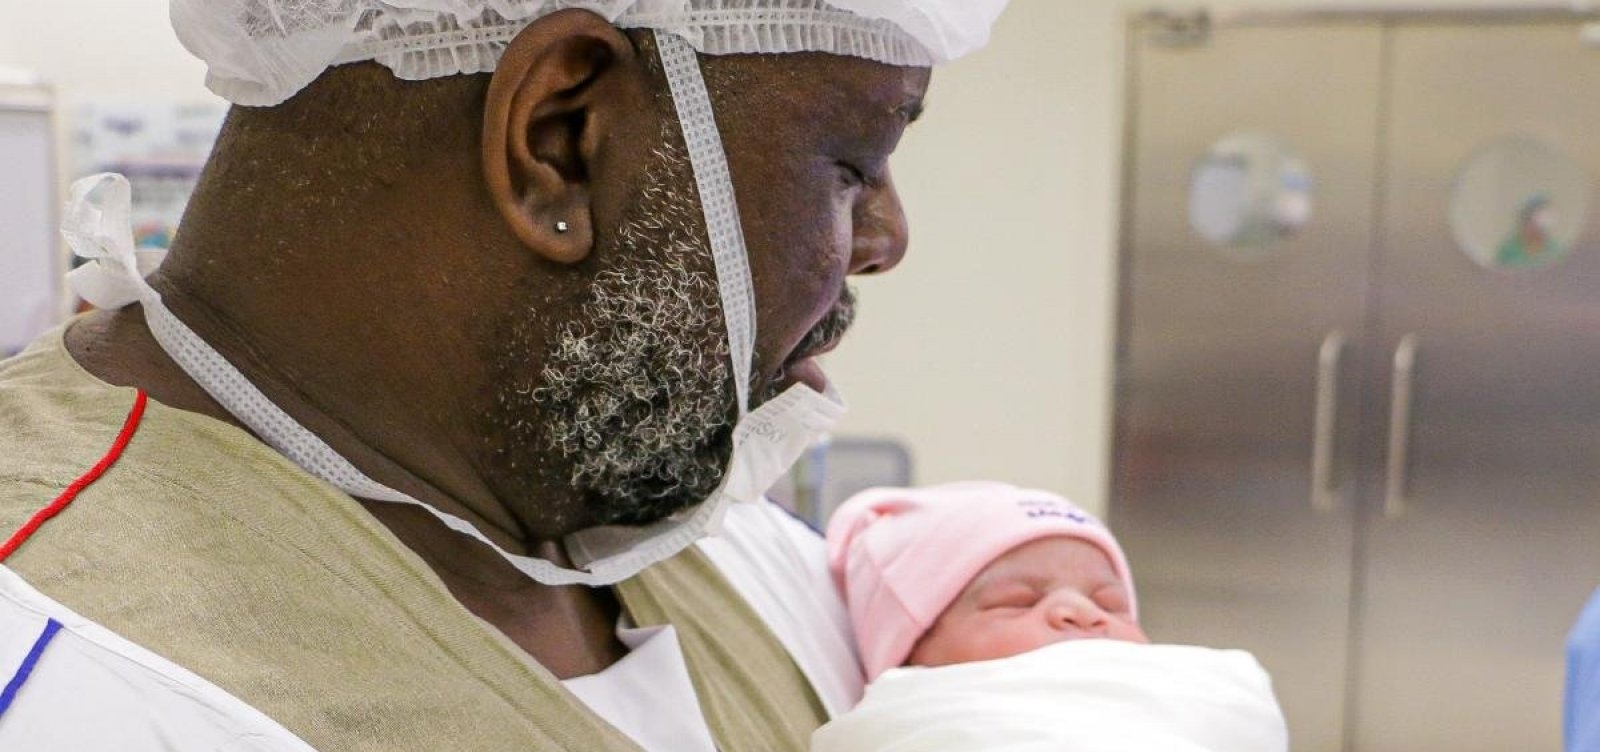 Péricles posta foto com a filha recém-nascida: 'Há uma semana minha vida mudou'